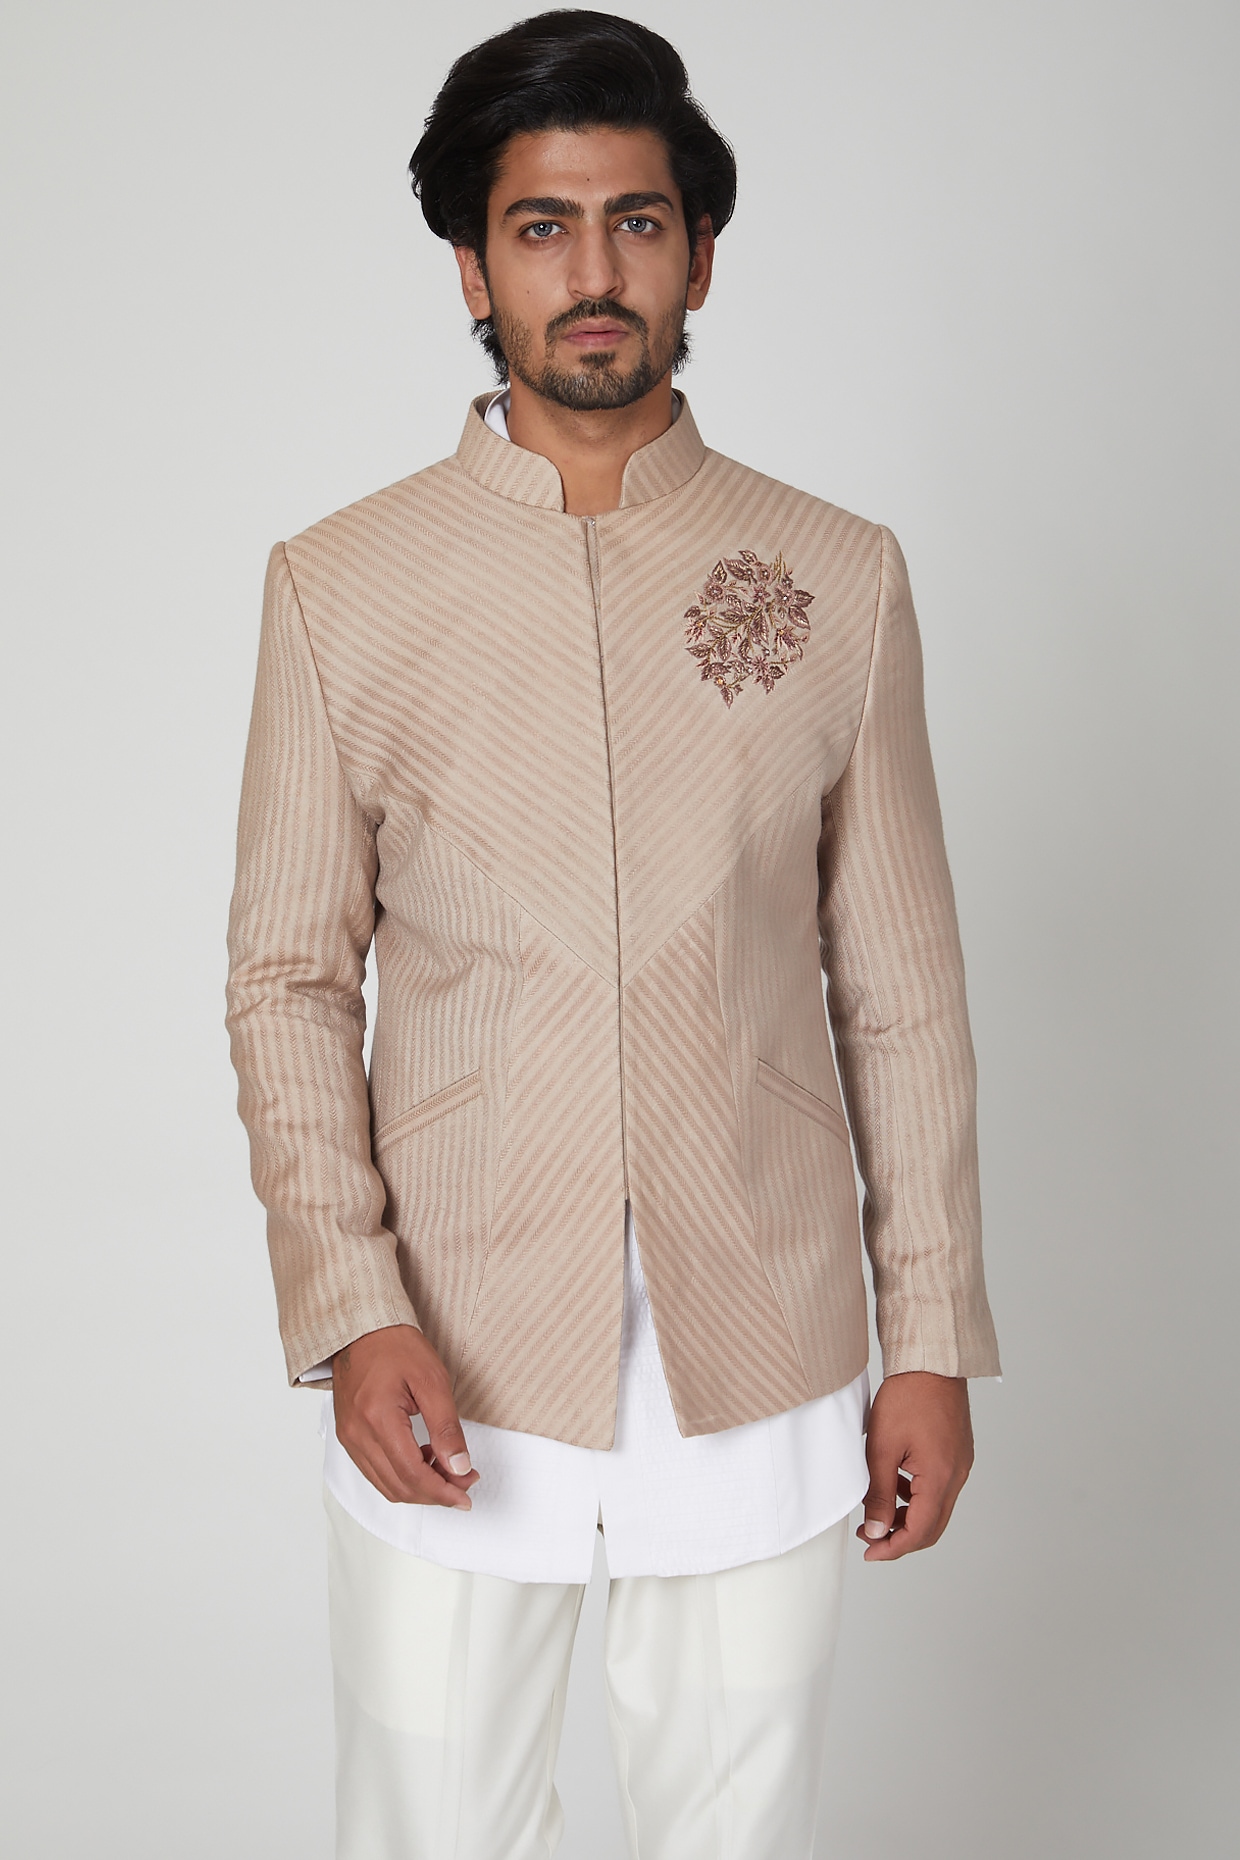 Stylish Jodhpuri Suits for Men Wedding